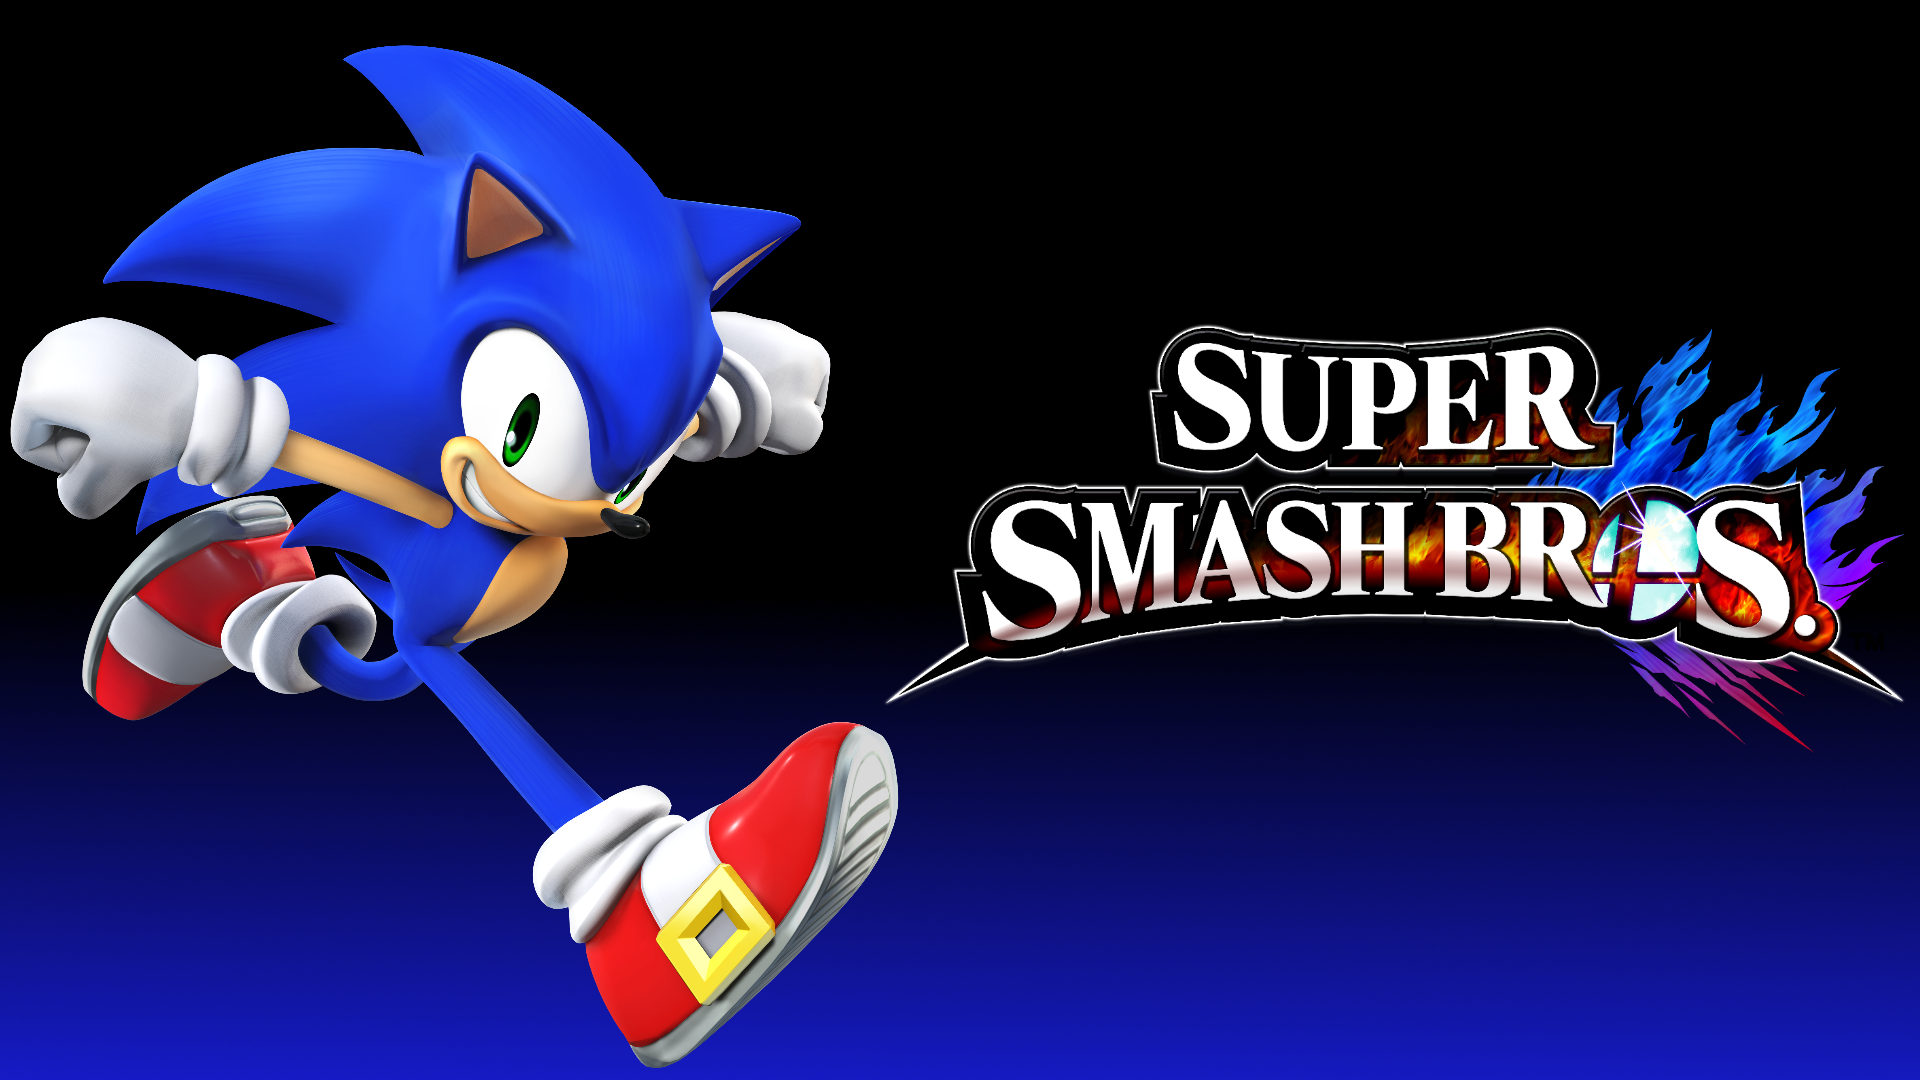 Super Smash Bros 4 Sonic The Hedgehog free images, download Super Smash Bro...